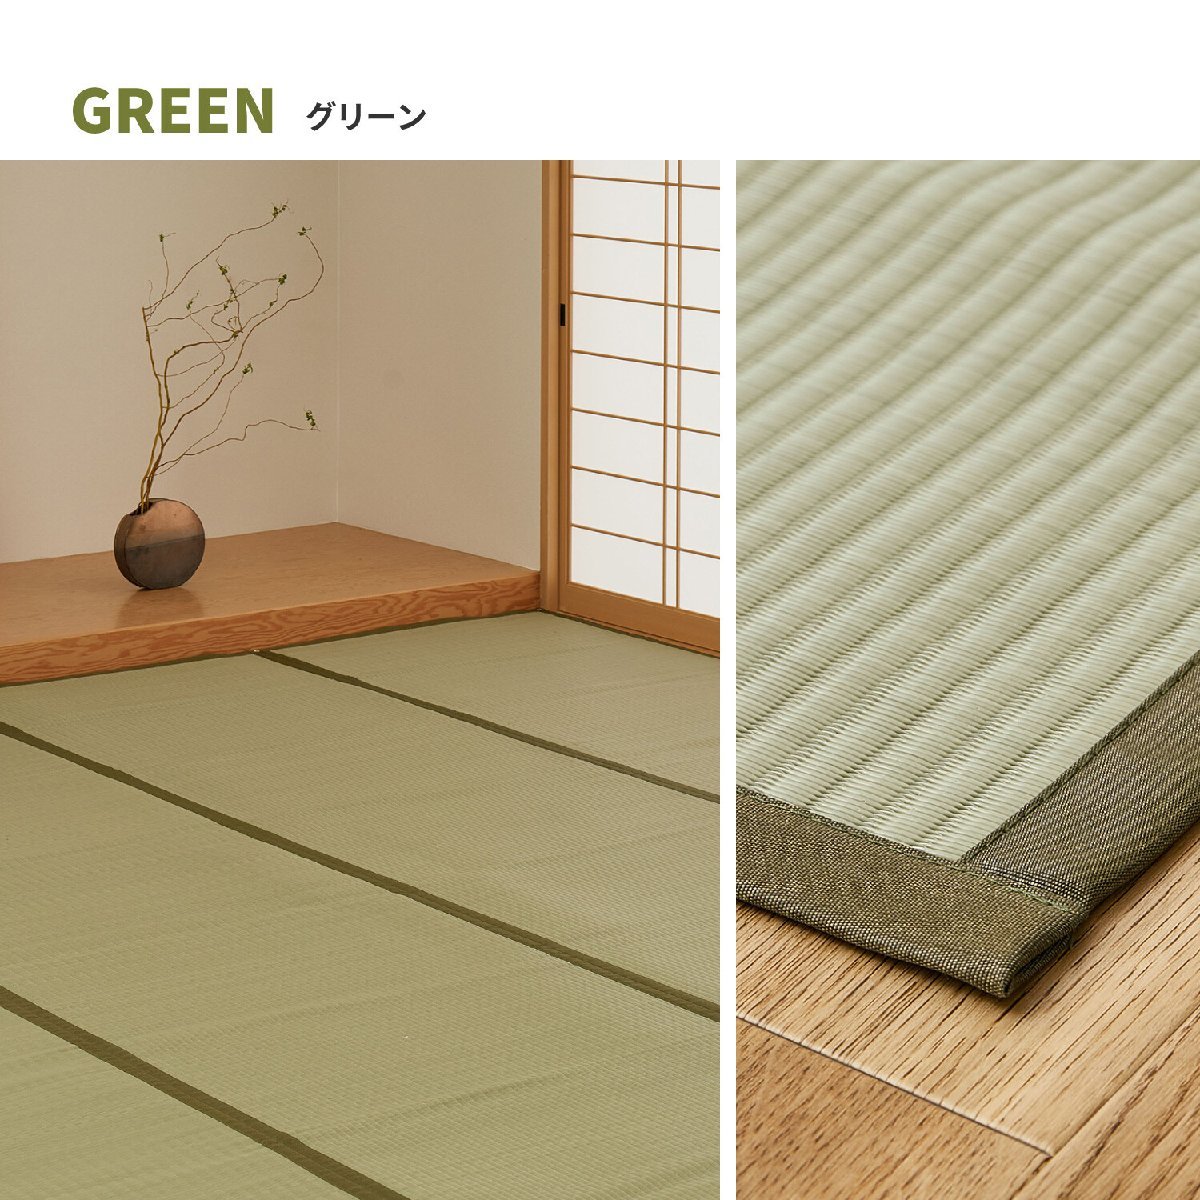 [... подлинный товар. ..]PP сверху кровать .. способ цветок .. промывание в воде OK [ 4 статья (....)] зеленый Edoma 3 татами (... коврик татами способ японский стиль мир вкус )